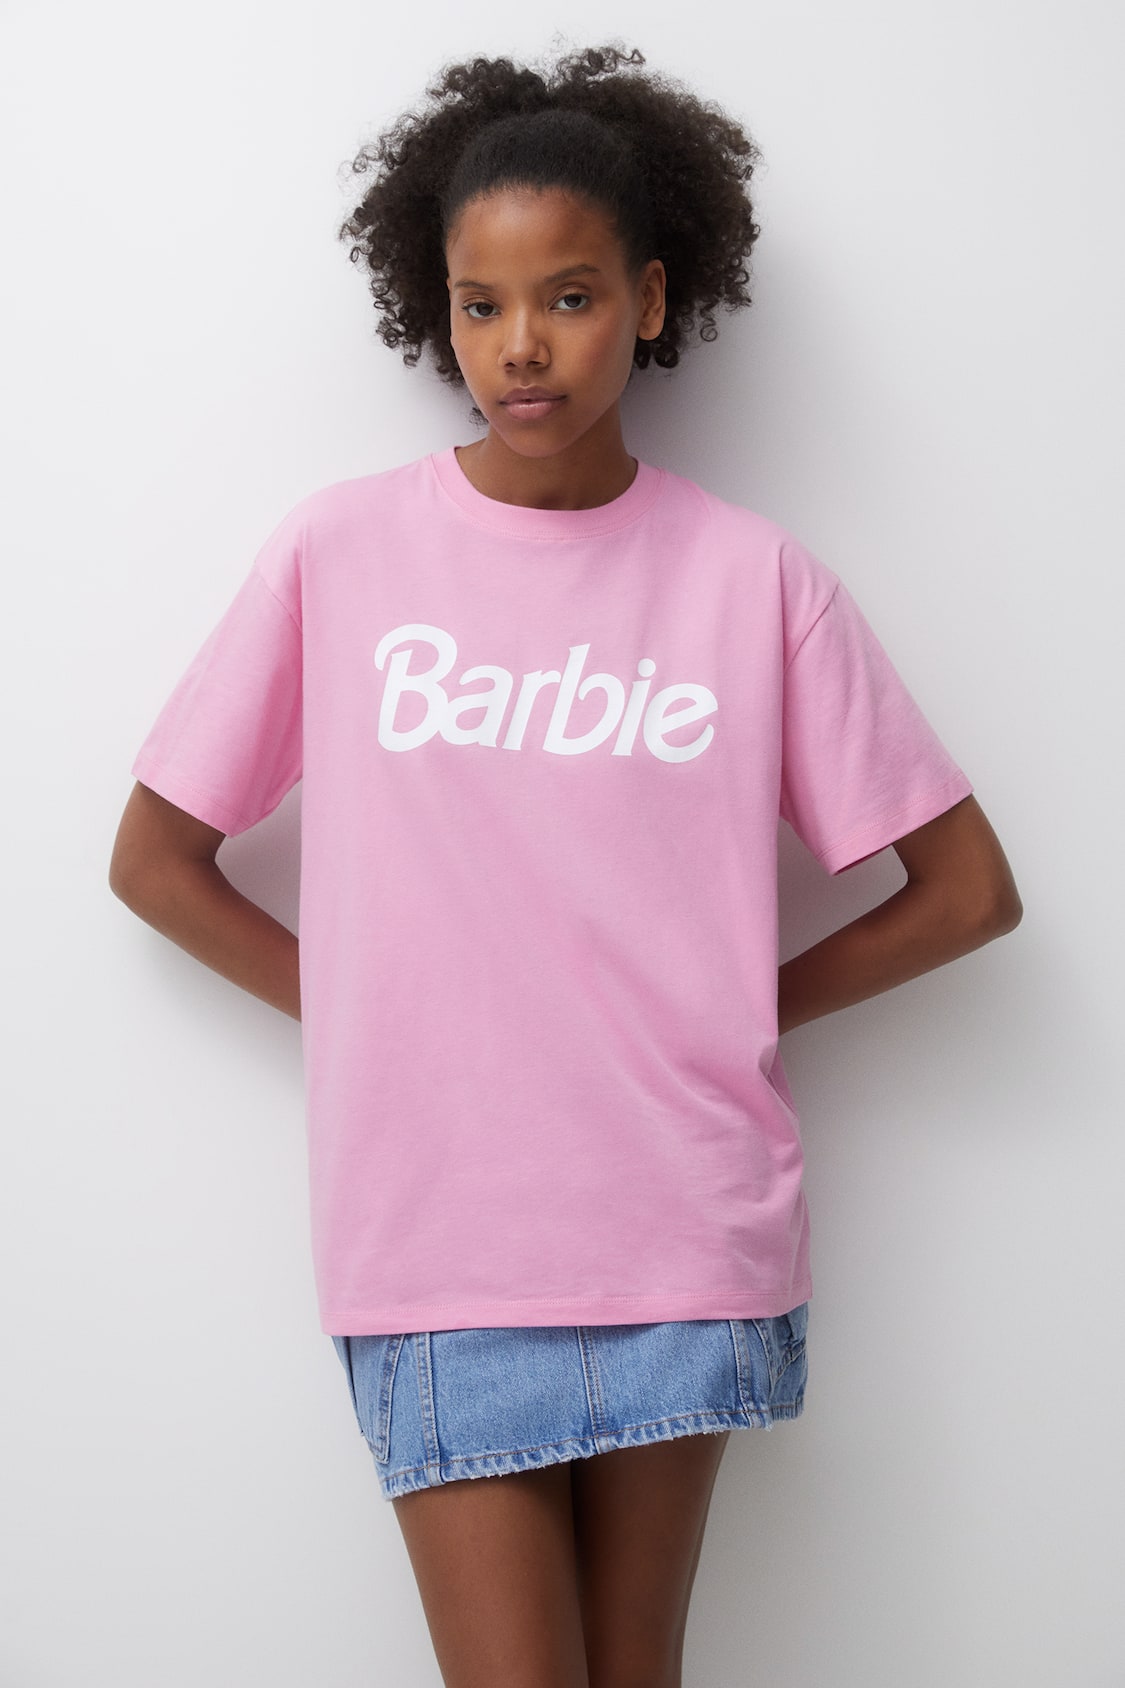 Camiseta licencia Barbie